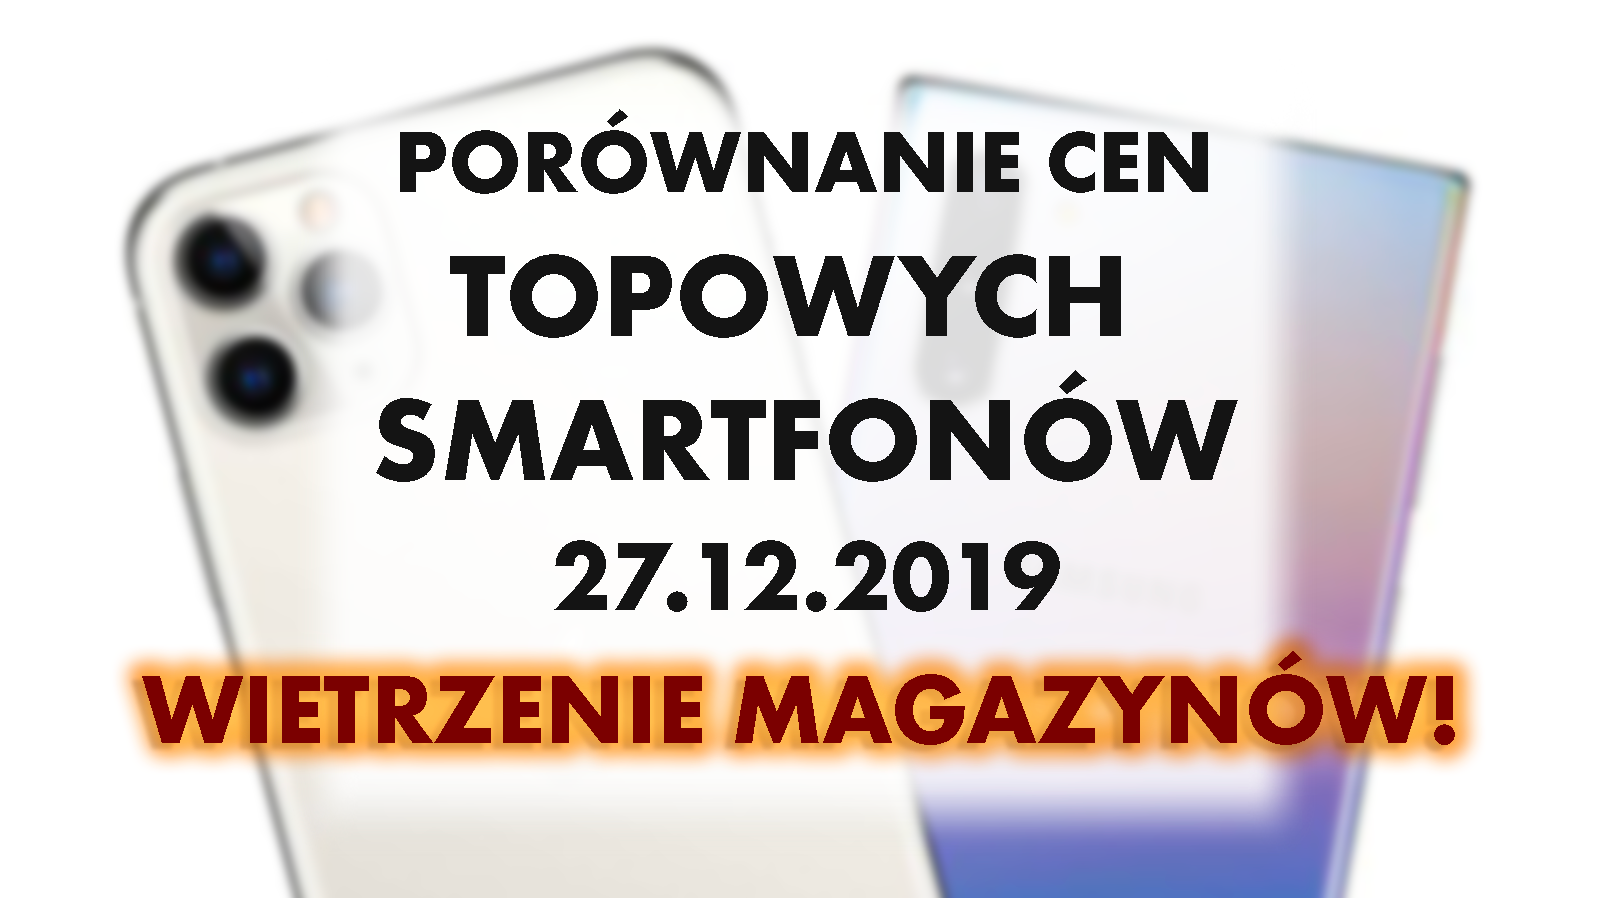 Topowe smartfony - wietrzenie magazynów w elektromarketach! | 27 GRUDNIA 2019 |